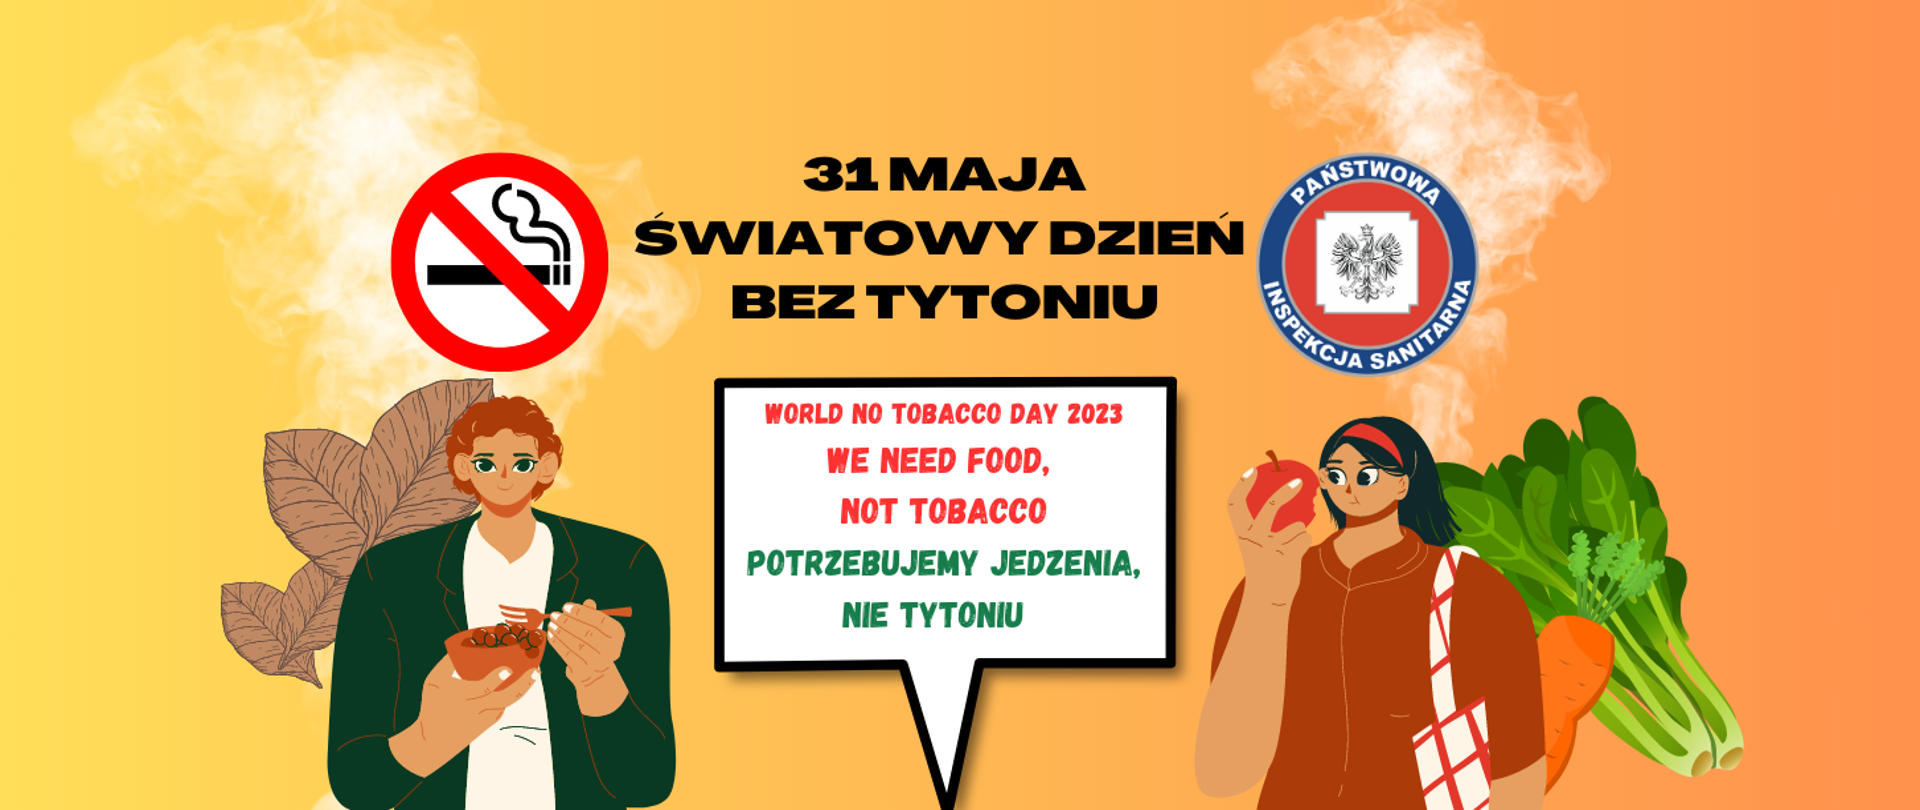 Dwie osoby jedzące warzywa. Na środku napis "31 maja światowy dzień bez tytoniu" i "potrzebujemy jedzenia nie tytoniu"